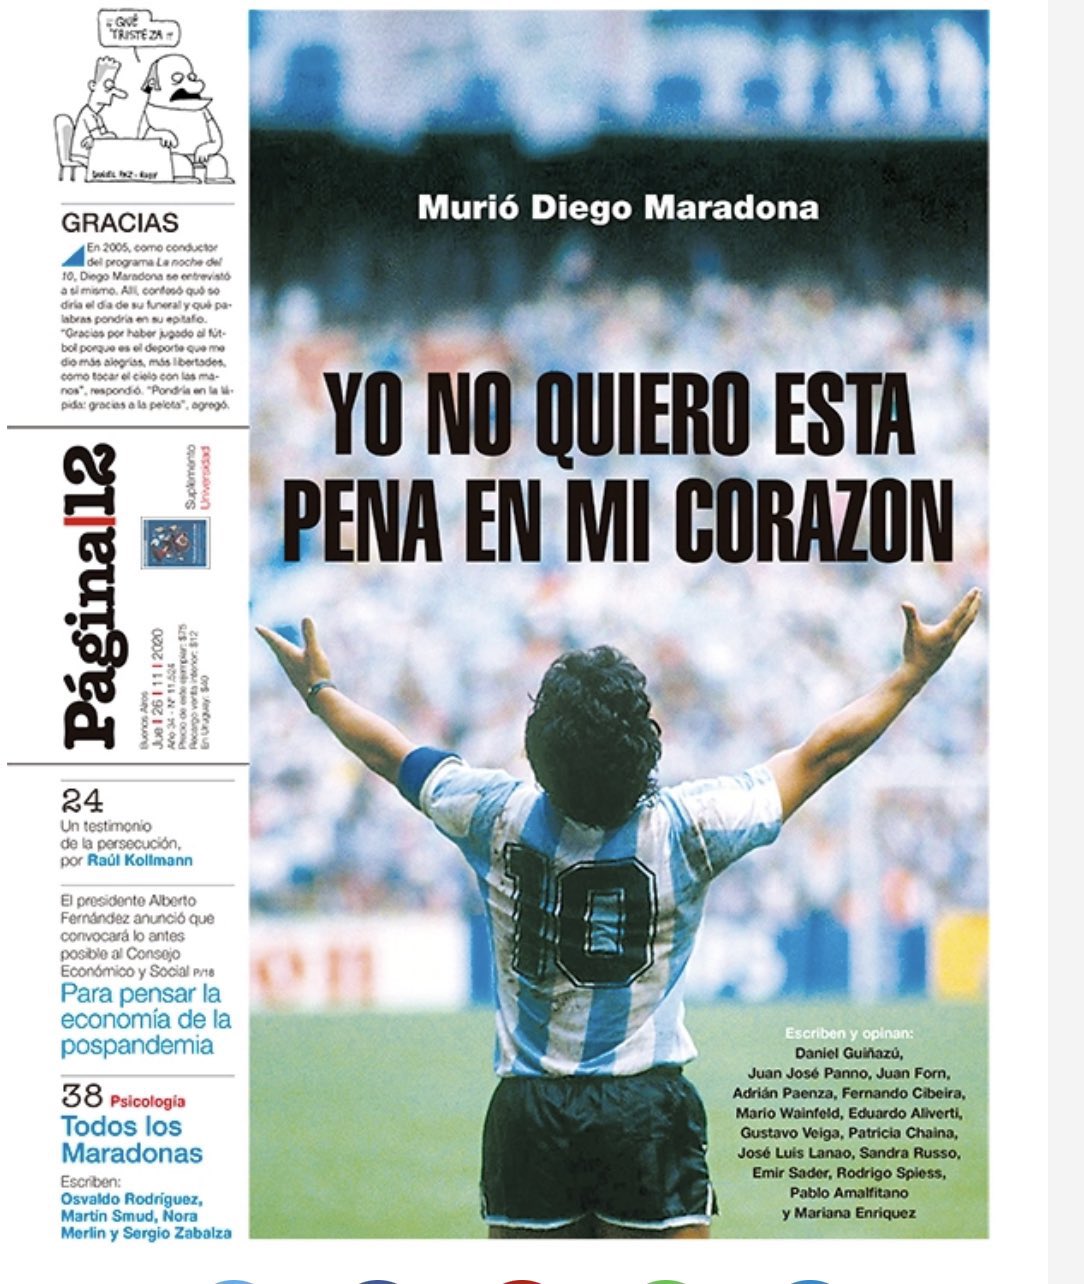 201126_maradona10.jpg (163 KB)